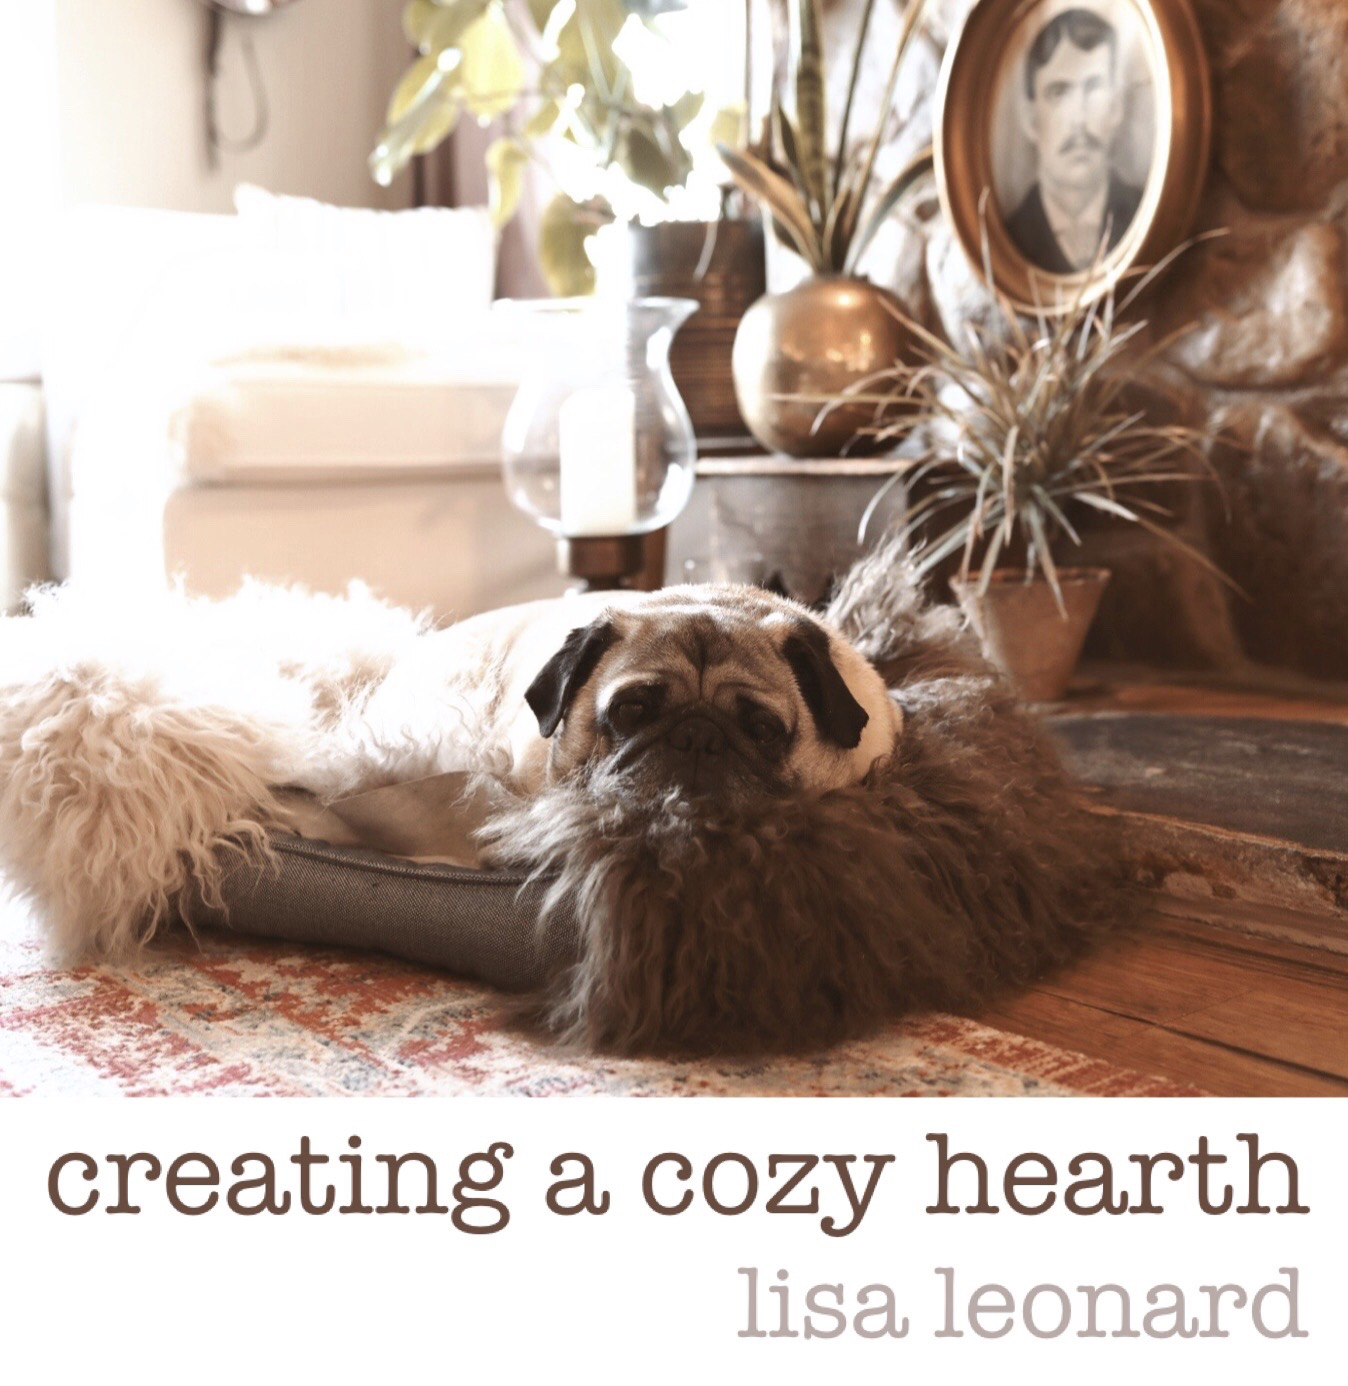 Heartfelt} Gifts Under $100 - Lisa Leonard Designs